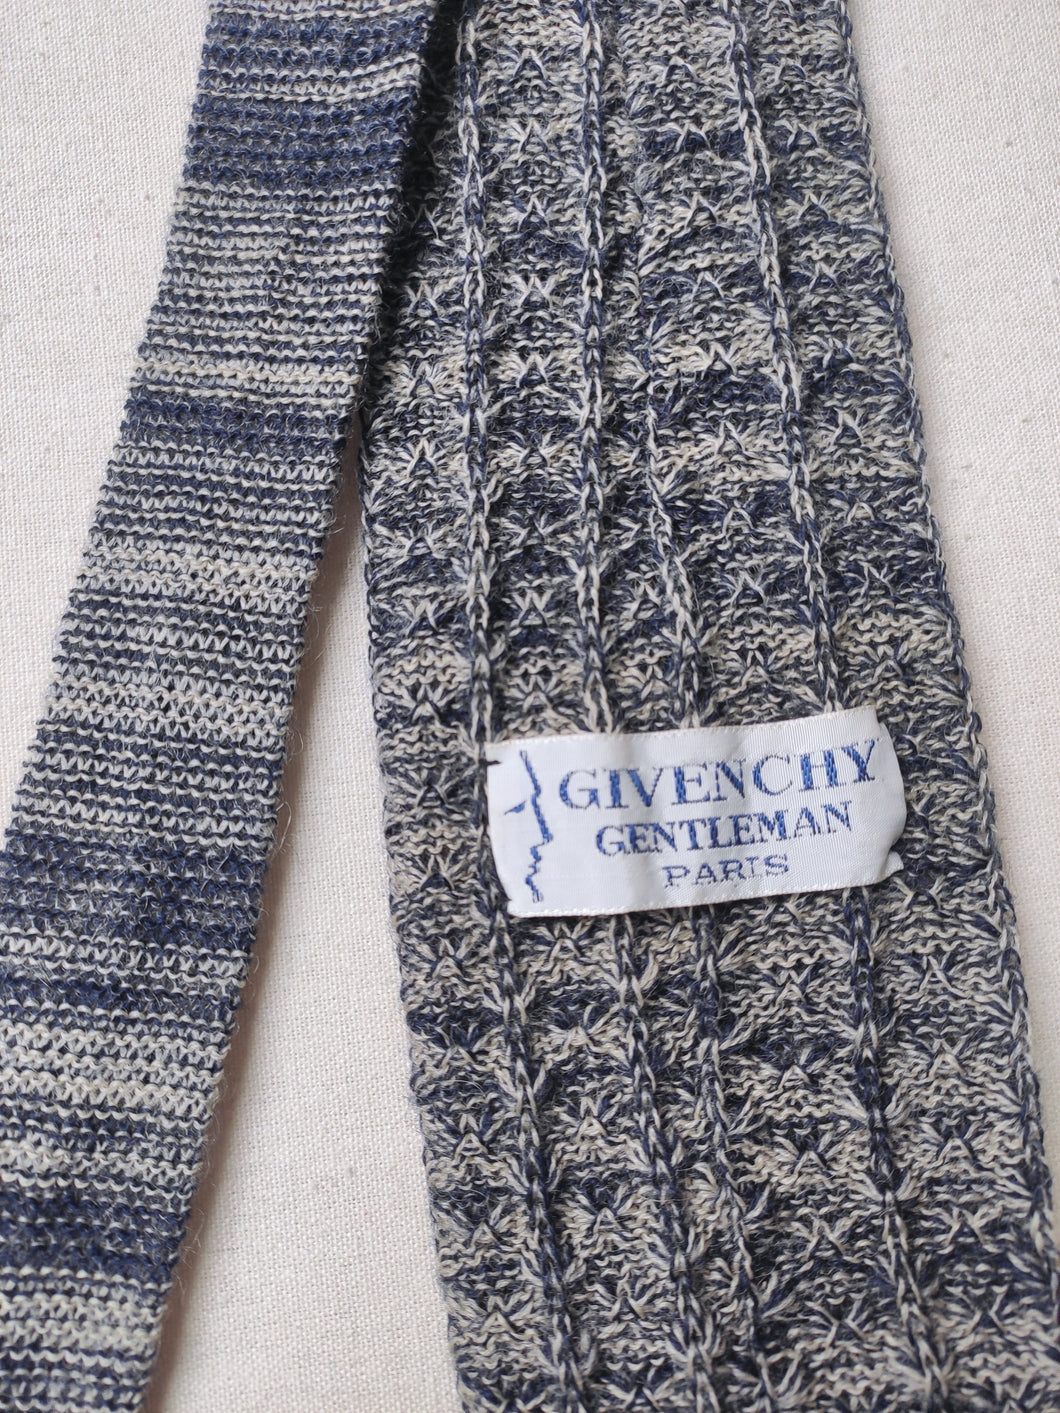 Givenchy Gentleman Paris cravate large vintage en maille 100% laine